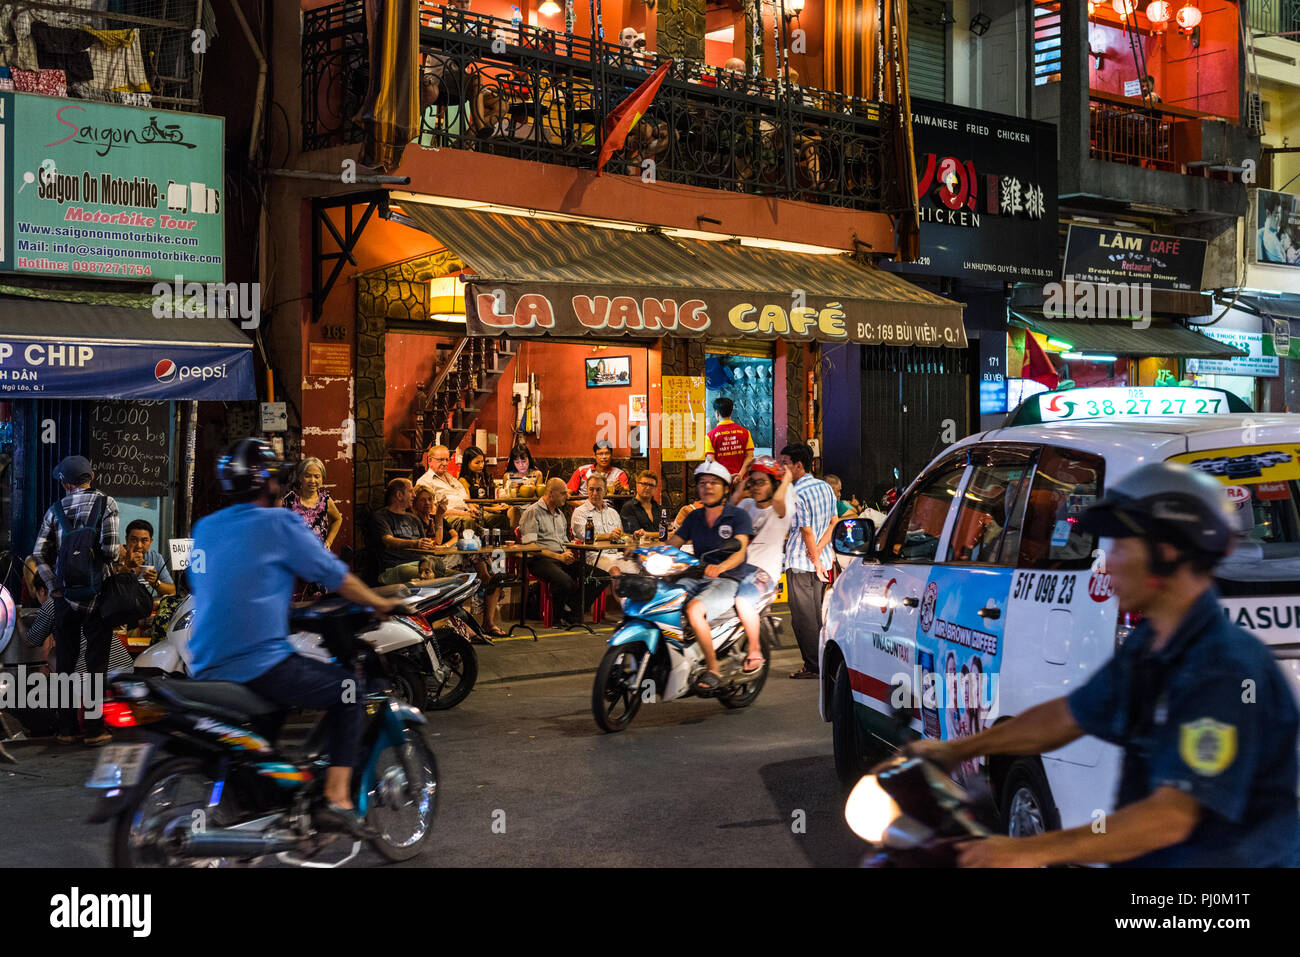 Ho Chi Minh, Vietnam - le 26 avril 2018 : Bui Vien Street - La vie nocturne vibrante Vang Cafe avec les visiteurs et le trafic chaotique. Banque D'Images